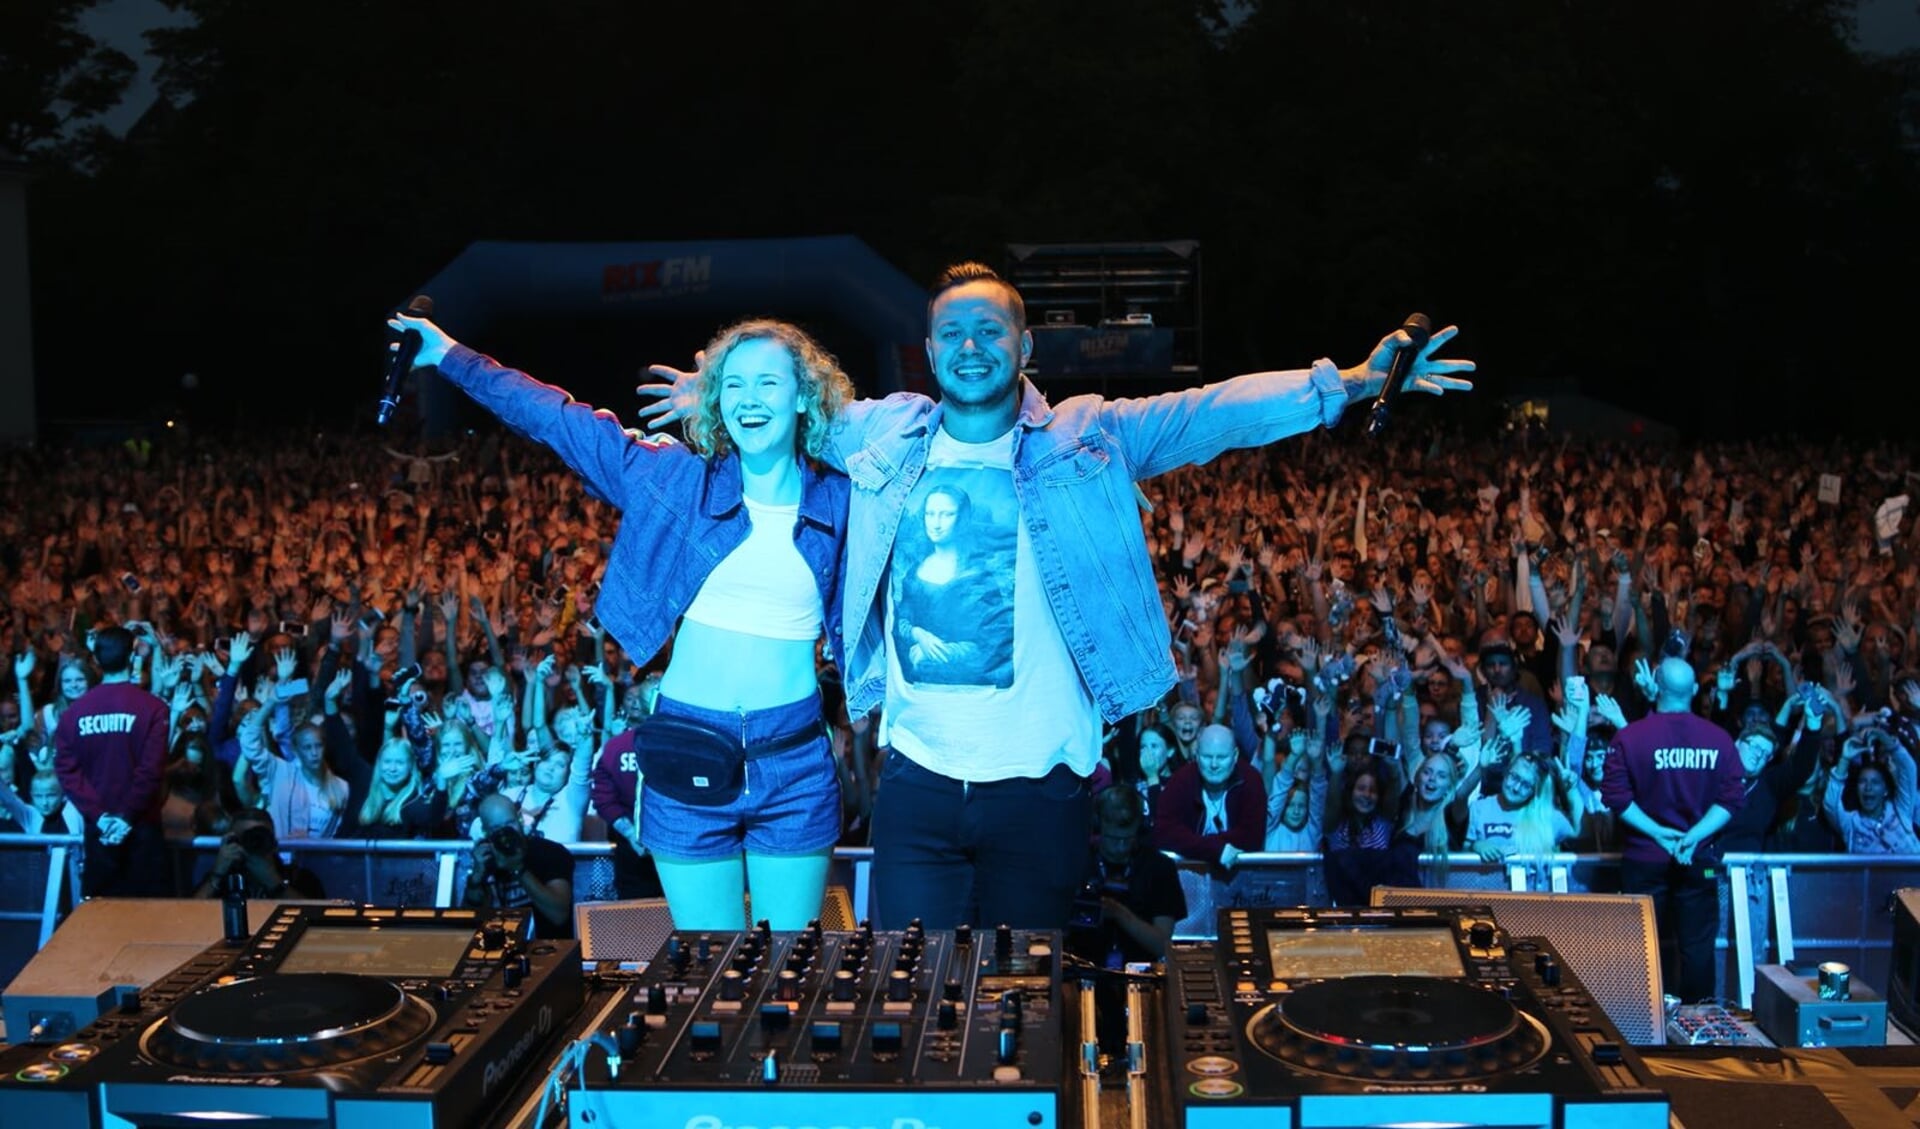 Willemijn met DJ Mike Perry tijdens optreden in Zweden